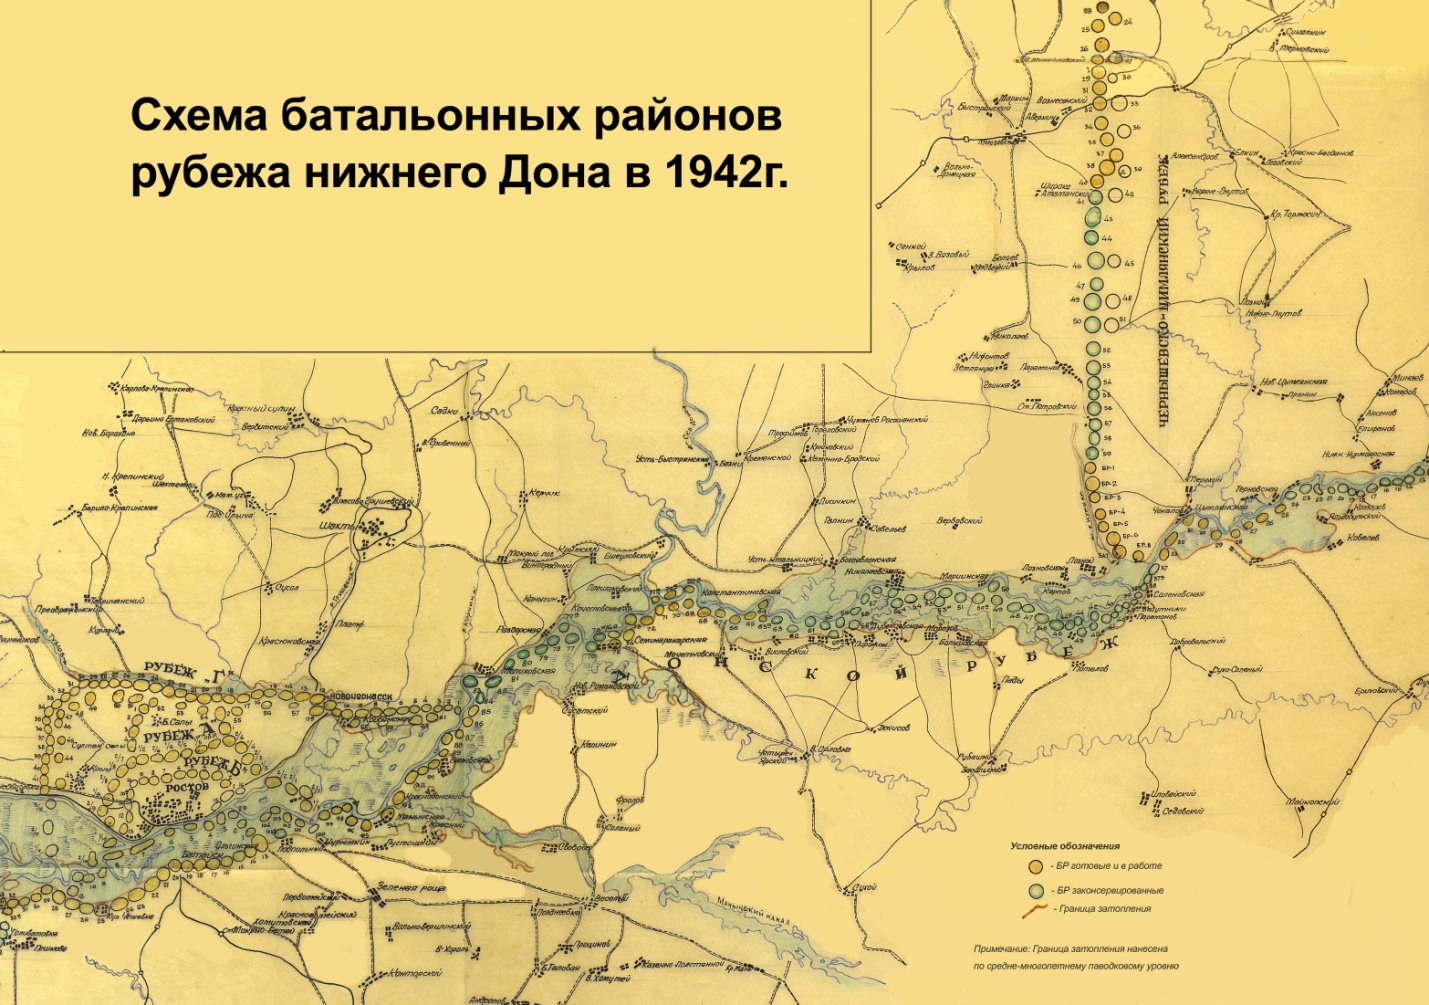 Схема батальонных районов рубежа нижнего Дона в 1942 г.